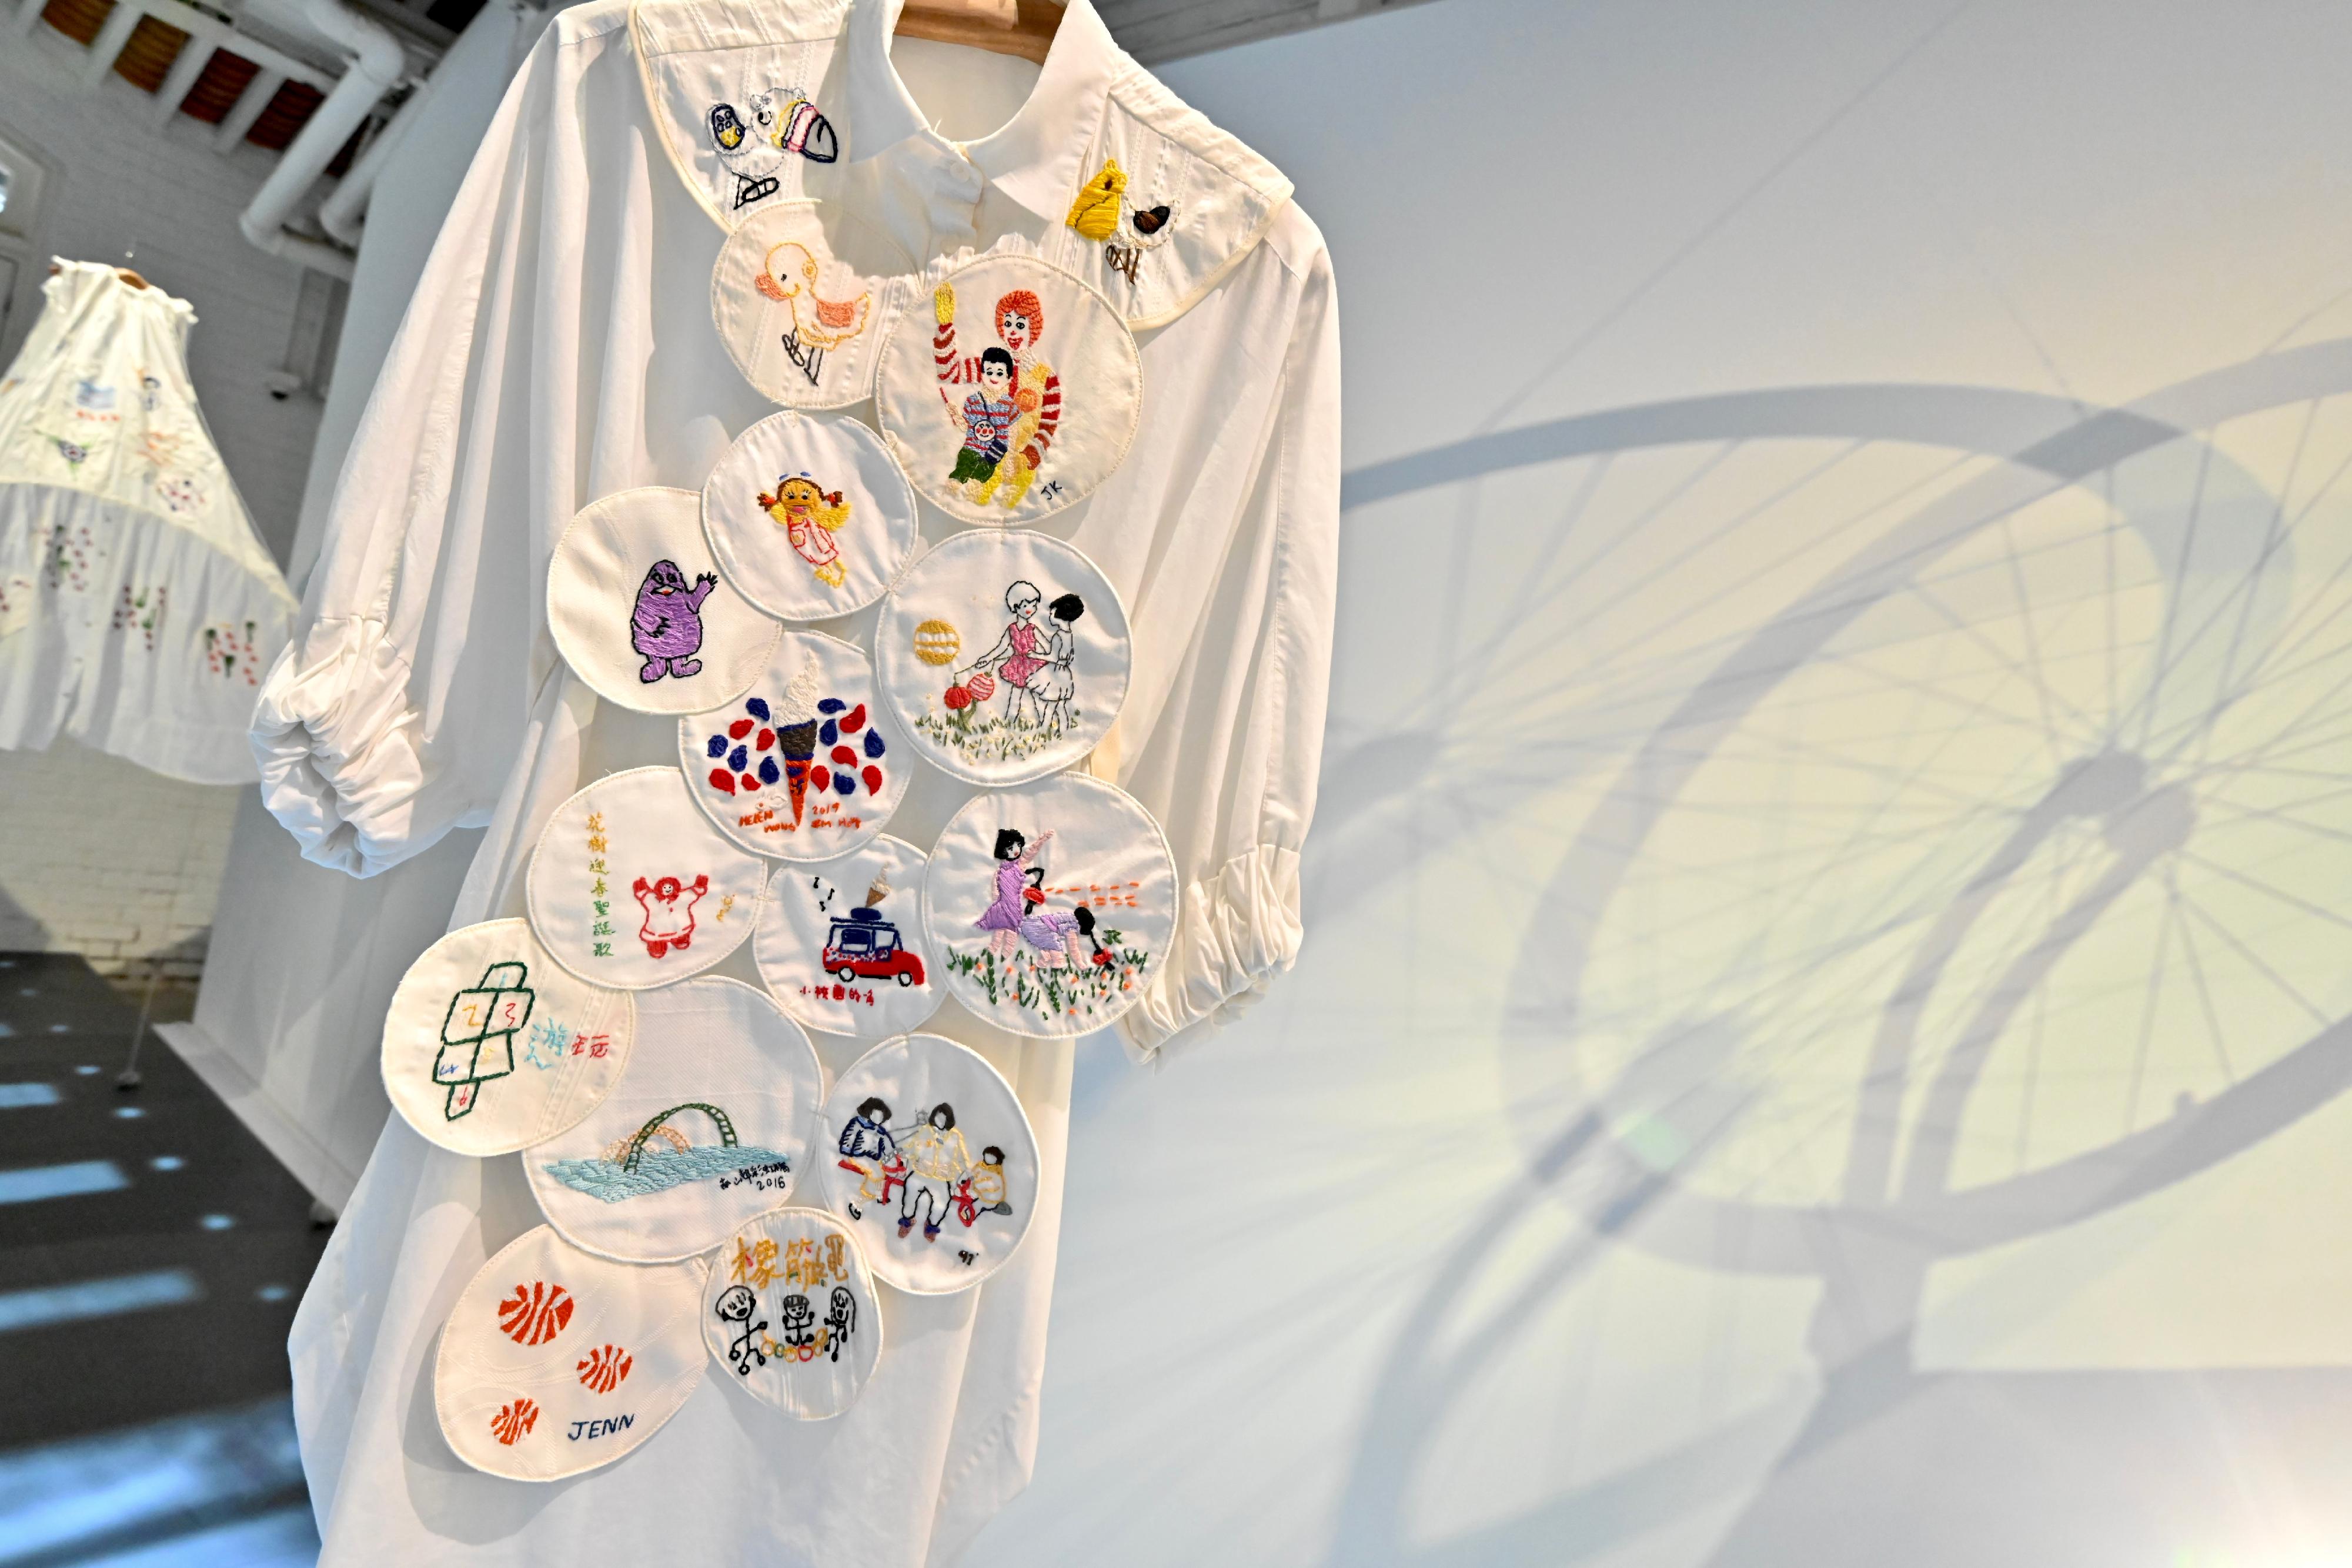 油街實現藝術空間明日（九月一日）至明年一月七日推出新展覽「穿起時間」。圖示時裝設計師林蔚彥創作的其中一件再生衣物，其主題為「兒童樂園」，展示香港人兒時的集體回憶。